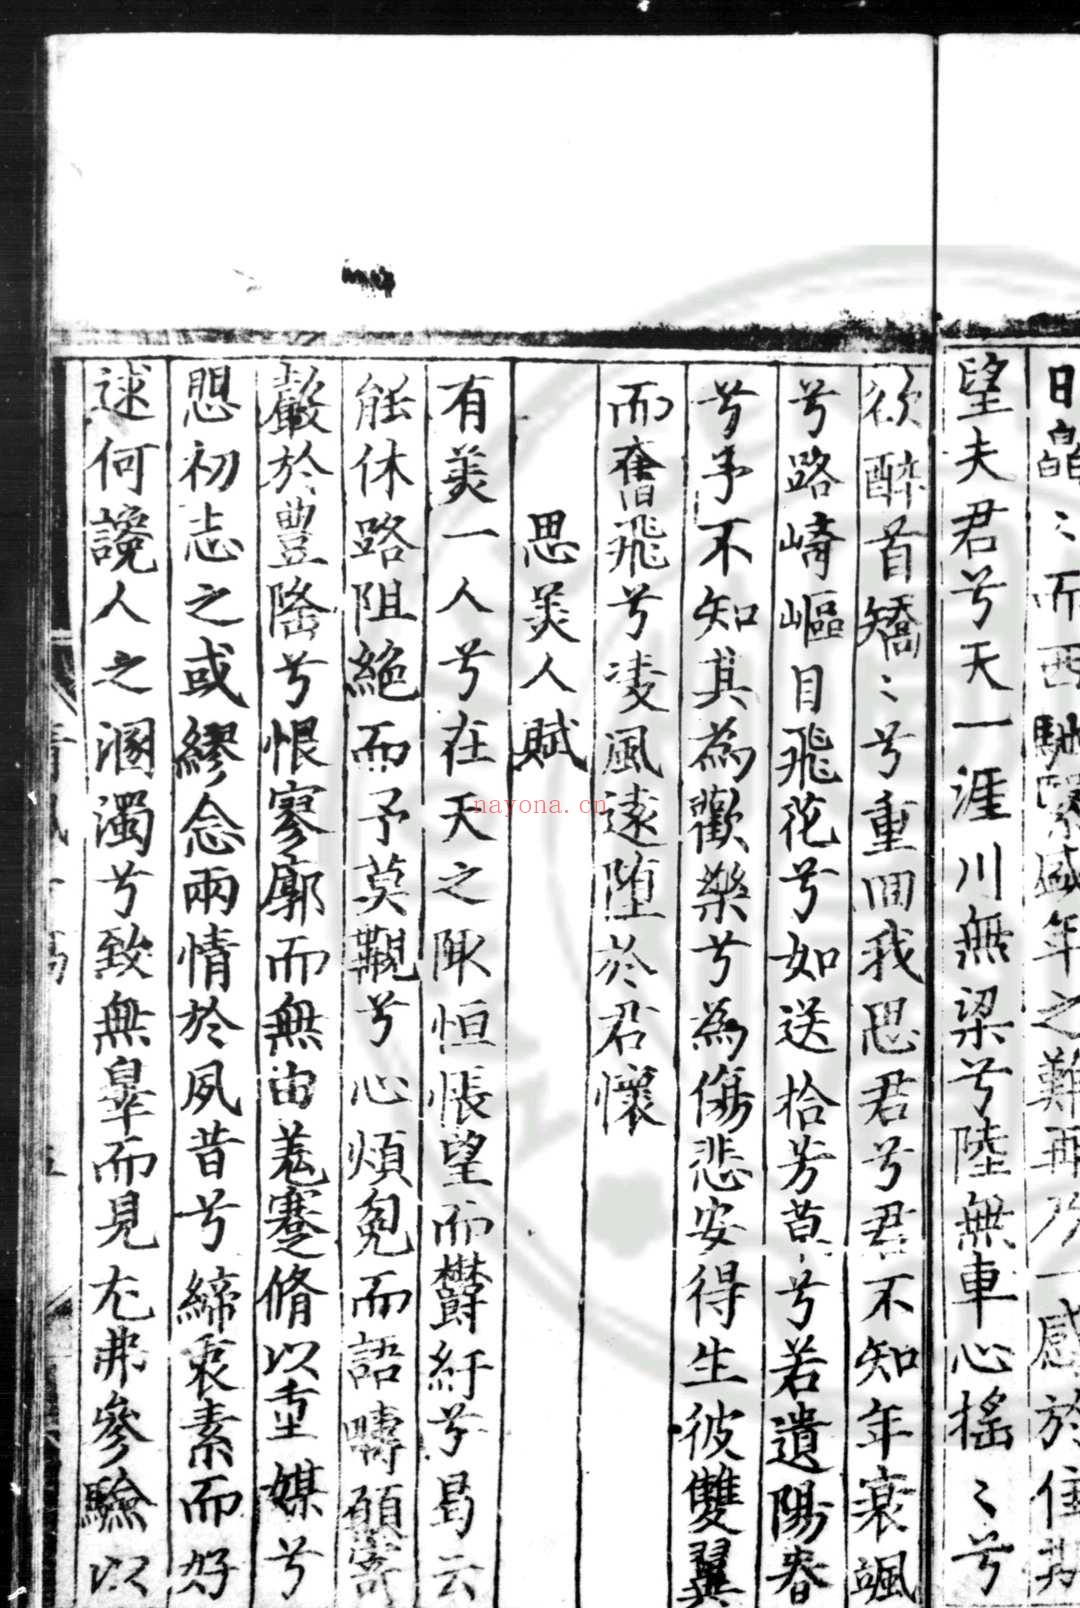 清风亭稿 (明)童轩撰 (明)张弼, 俞泽等评点 明成化间(1445-1487)刊本